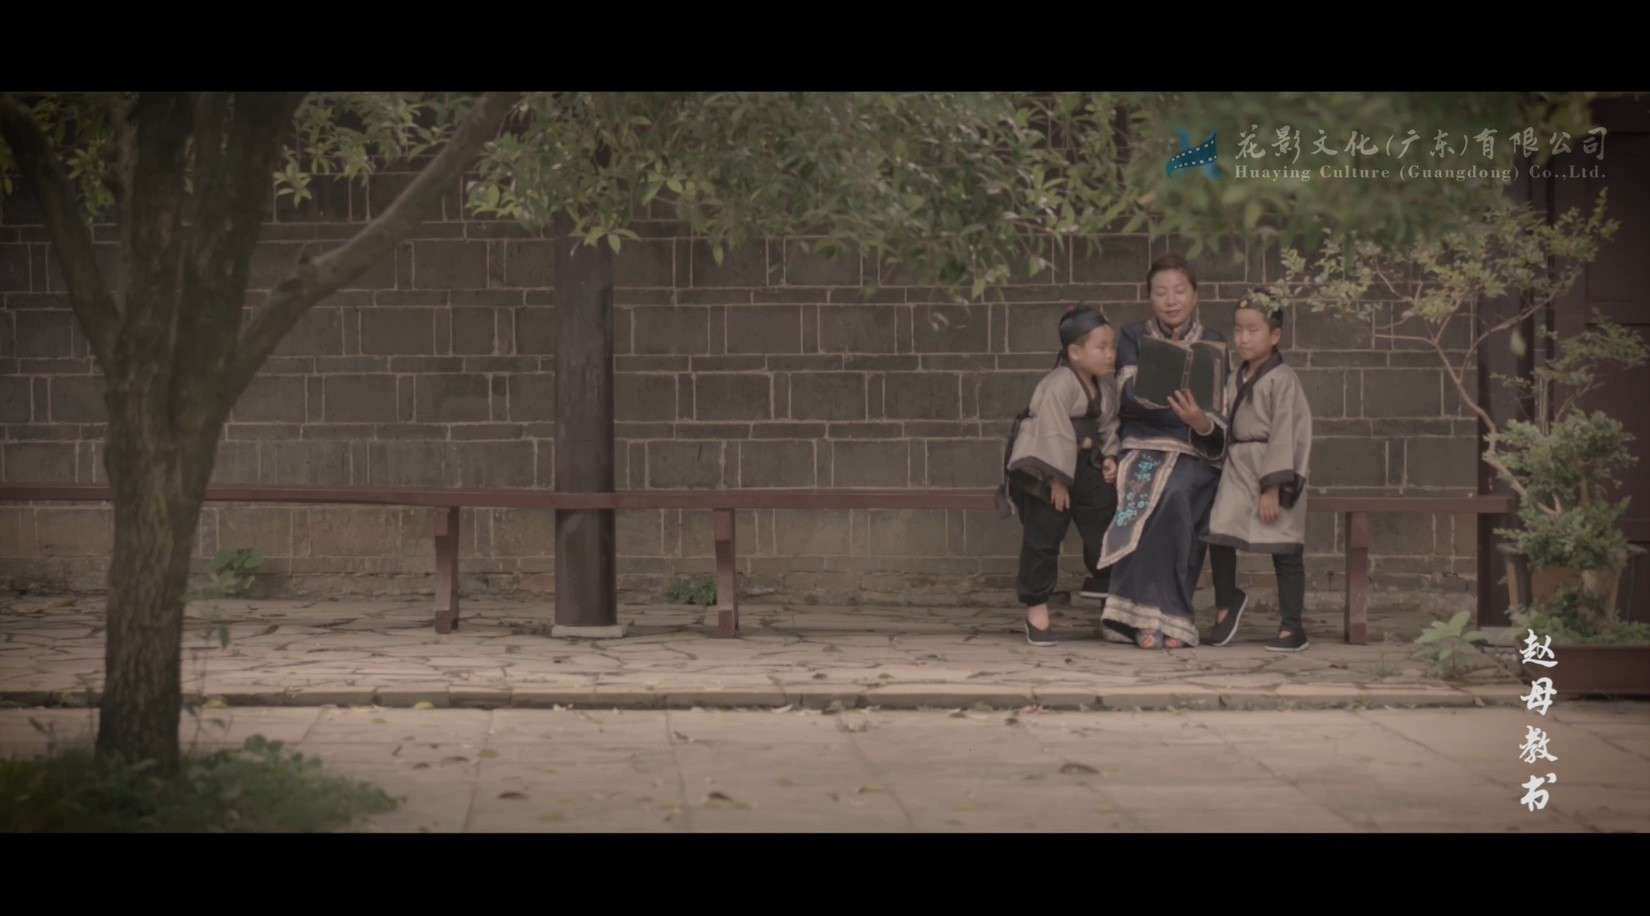 国家历史文化名镇《青岩古镇》专题纪录片 | 片段节选